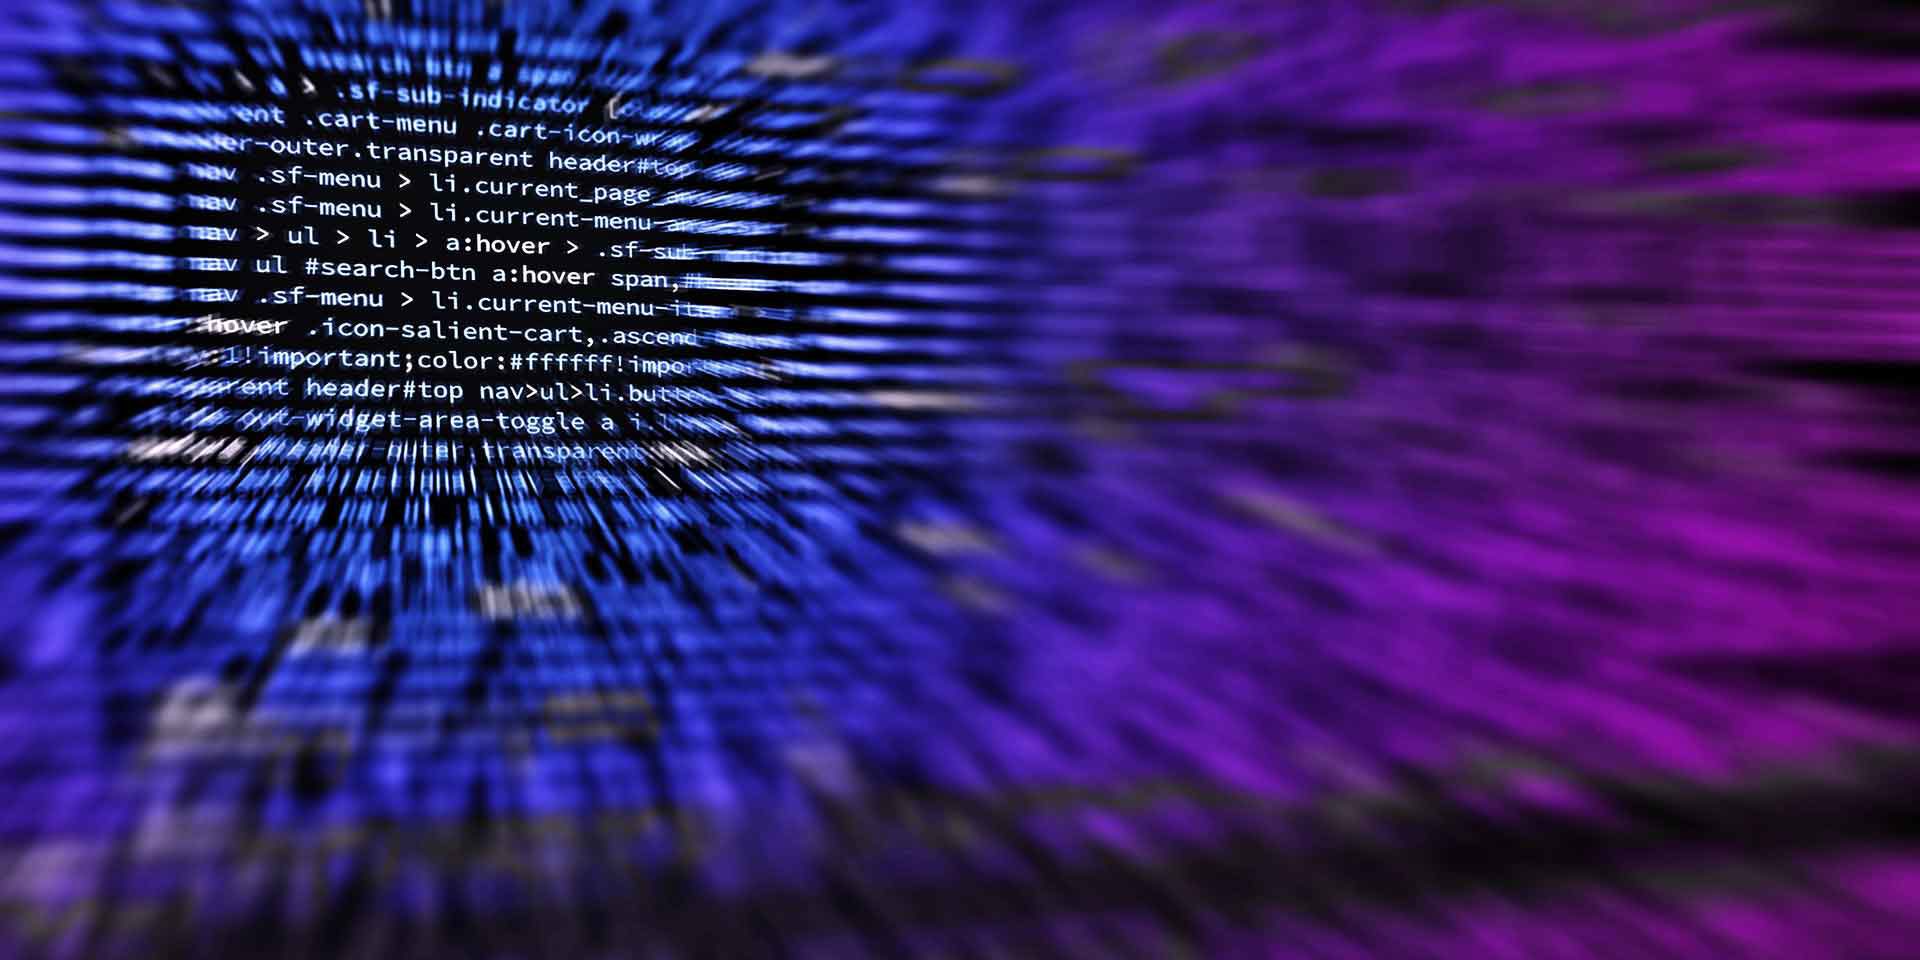 Precisionsec Blog Locky Ransomware Actors Adopt DDE Technique to Deliver Malware